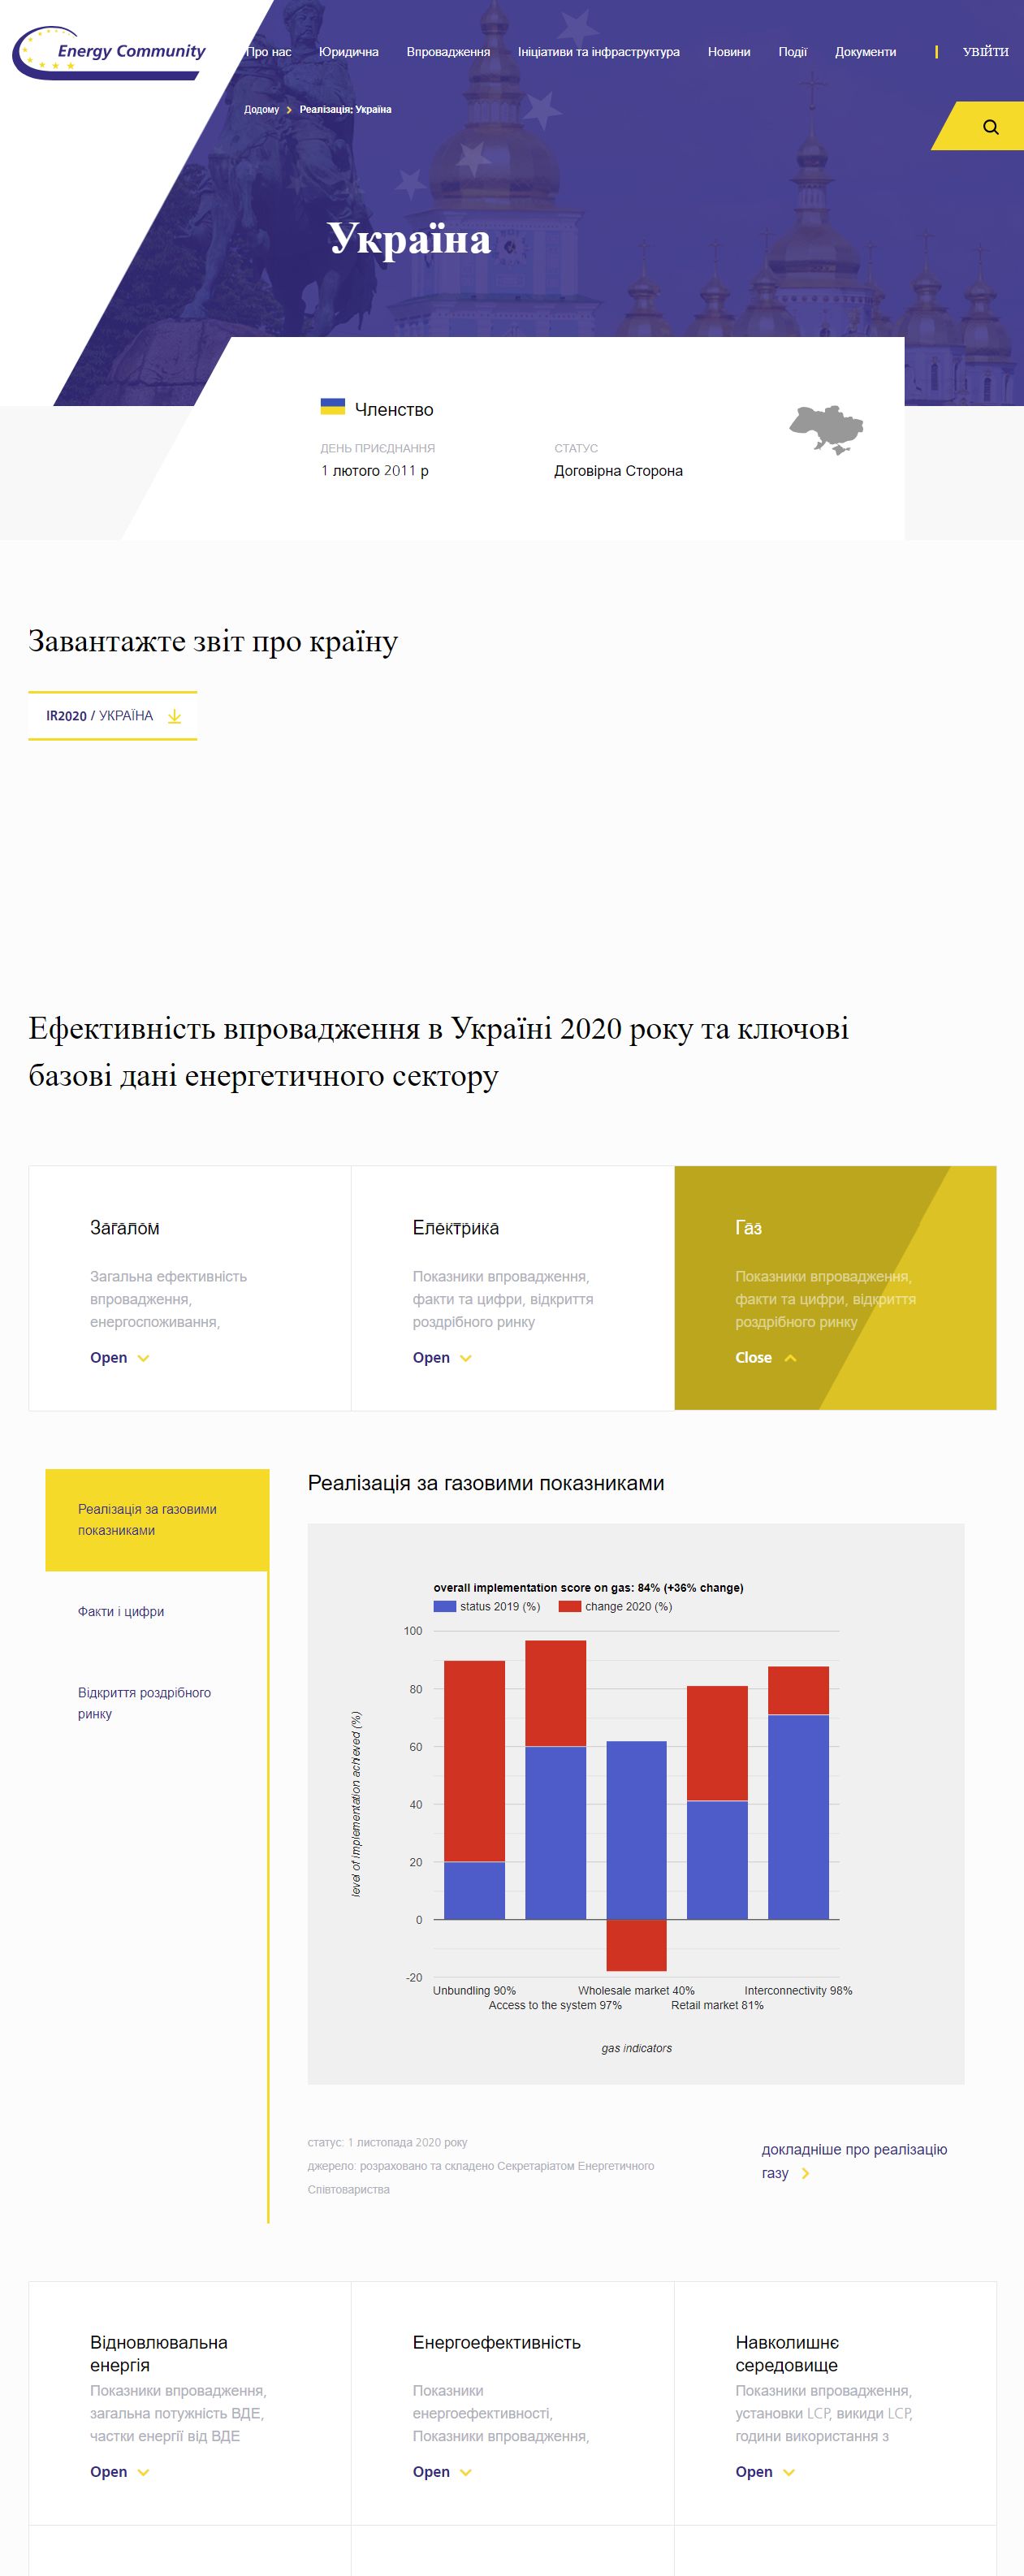 https://www.energy-community.org/implementation/Ukraine.html